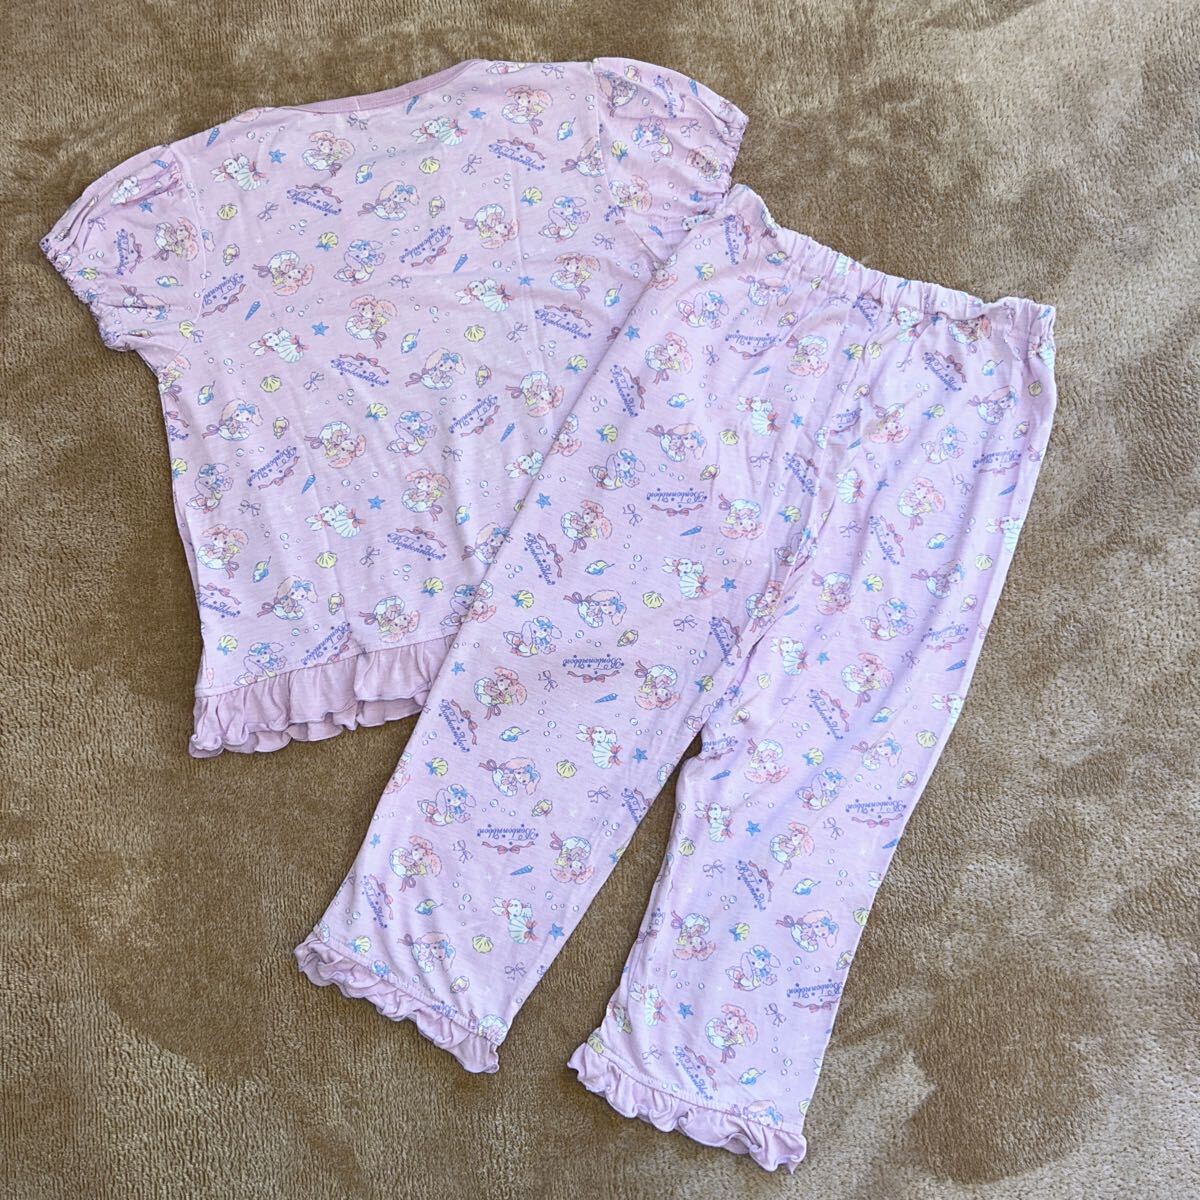  новый товар! Sanrio .... Ribon. короткий рукав пижама 140 размер летний незначительный земля девочка оборка пижама контакт охлаждающий пижама 